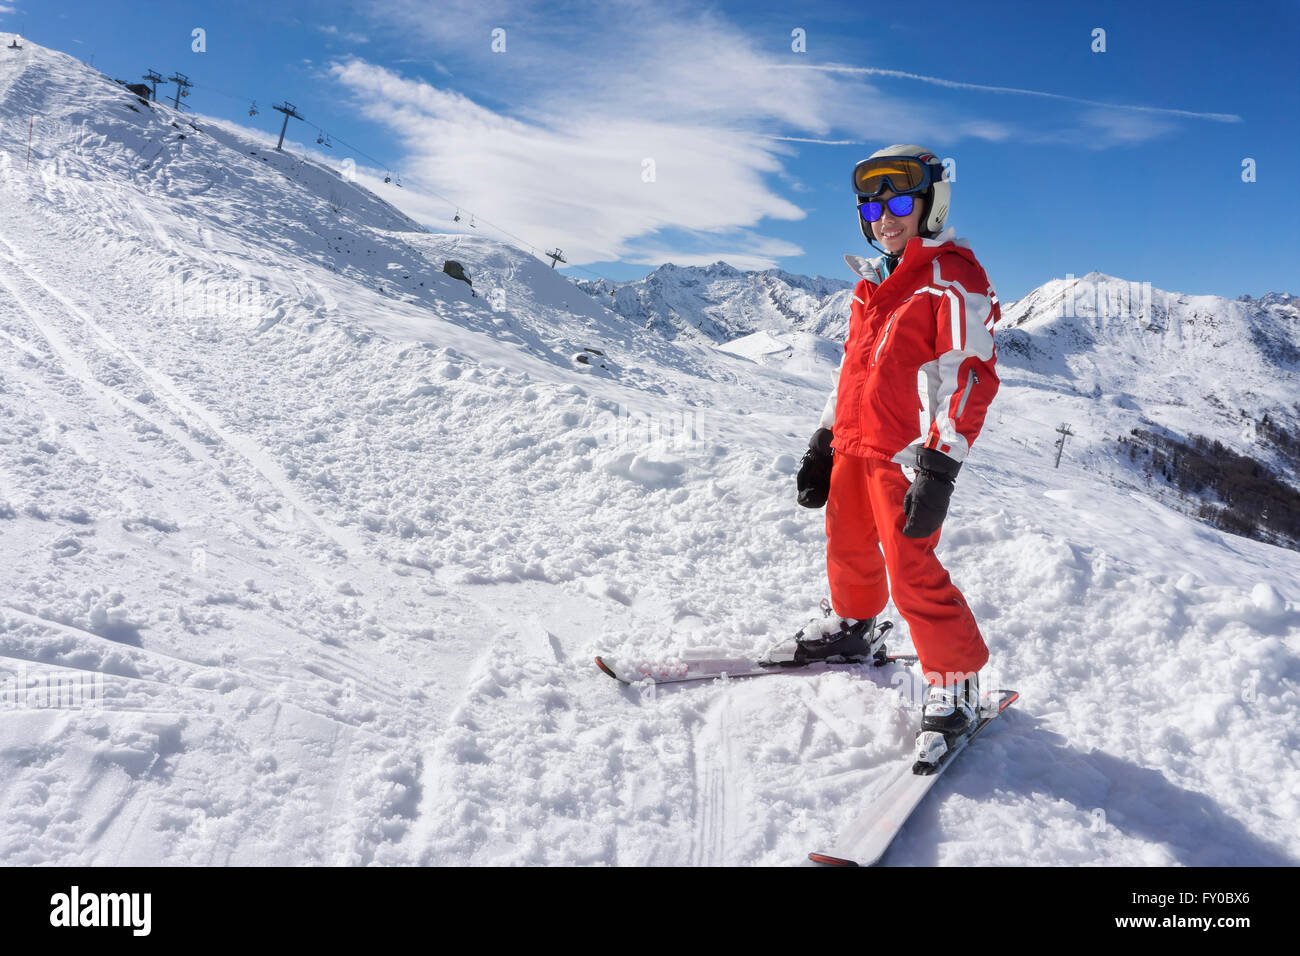 Smiling boy en combinaison de ski sur la neige Banque D'Images